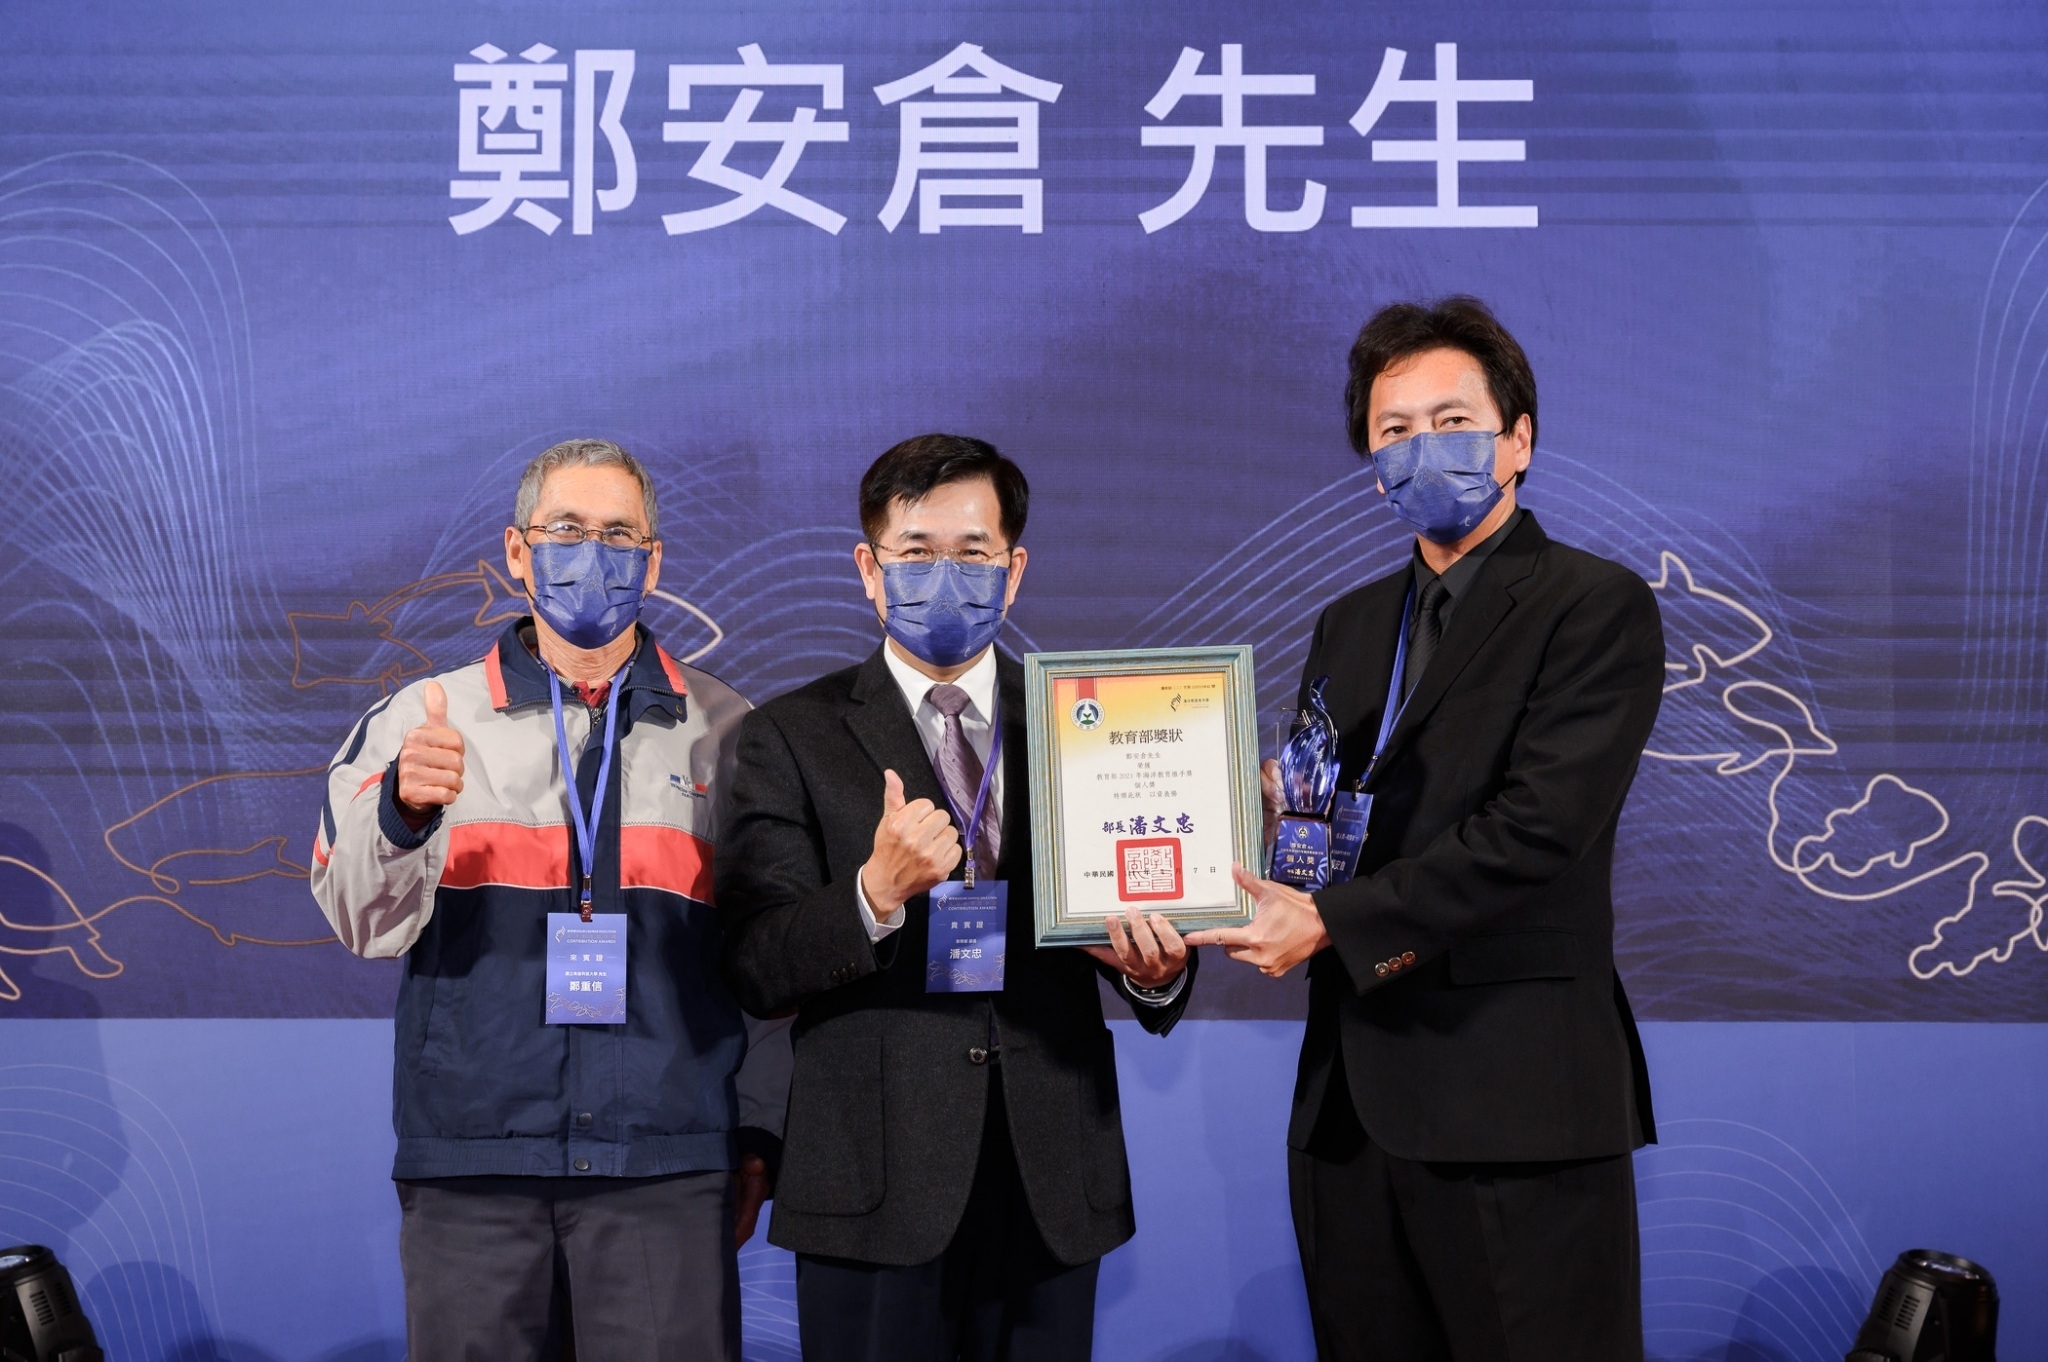 陽明海運股份有限公司獲得「團體獎」由李德仁協理代表致詞